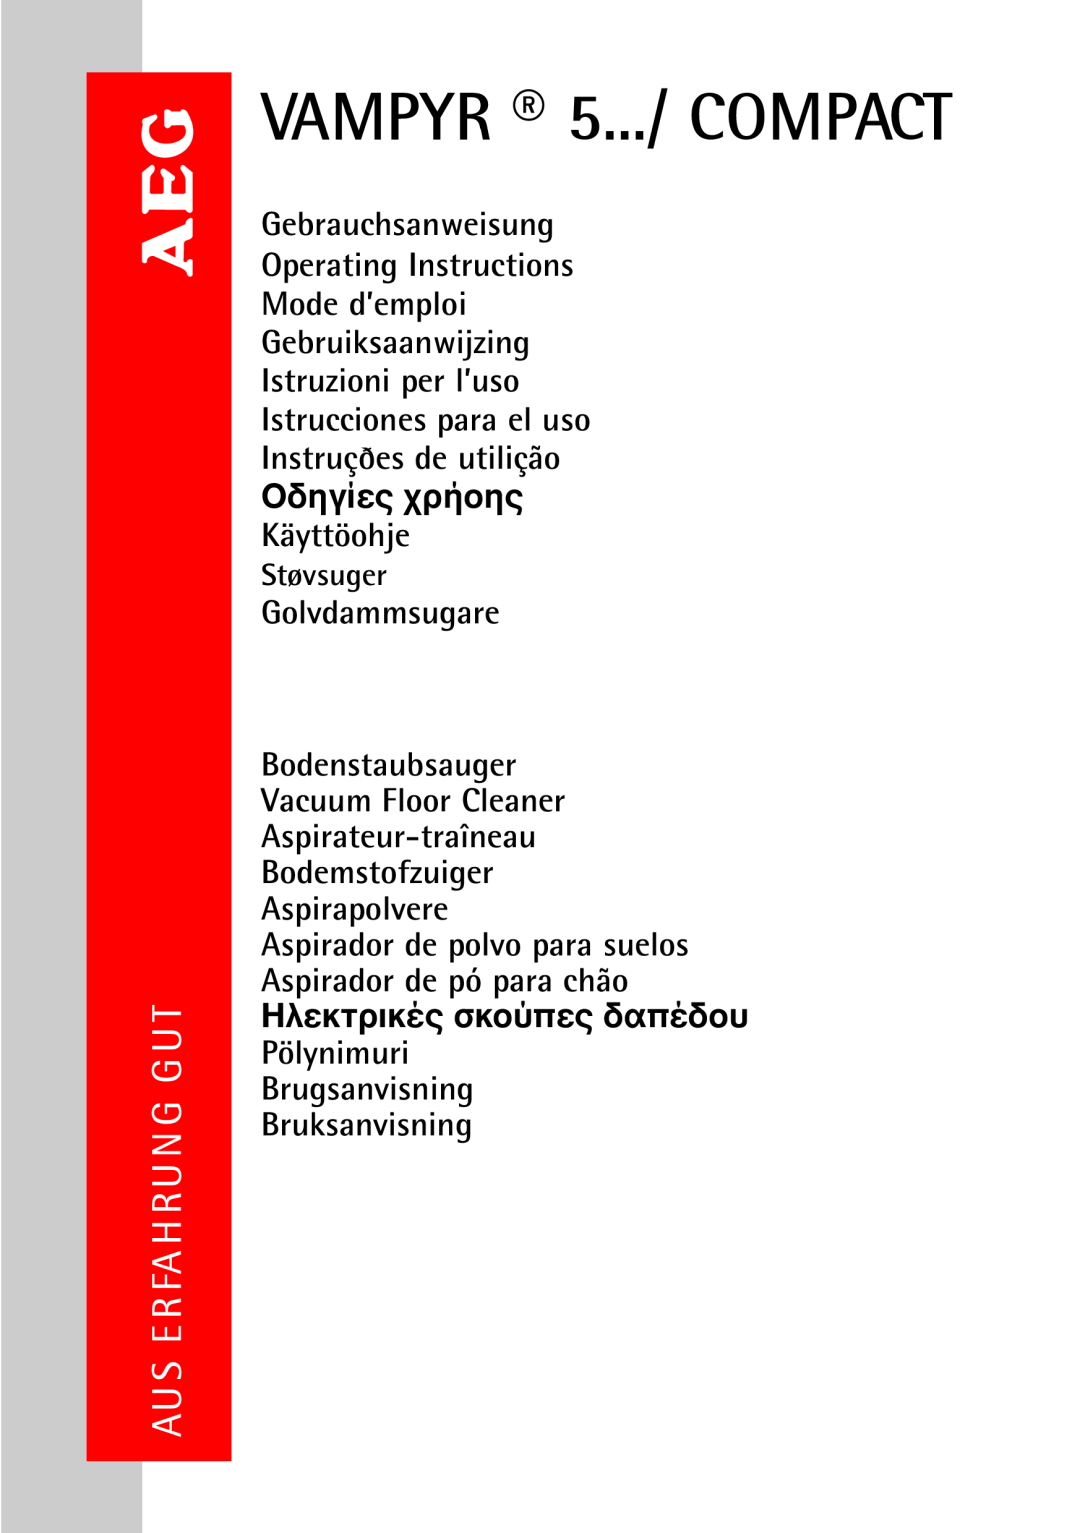 AEG operating instructions VAMPYR 5.../ COMPACT, Golvdammsugare, Brugsanvisning Bruksanvisning, Støvsuger 